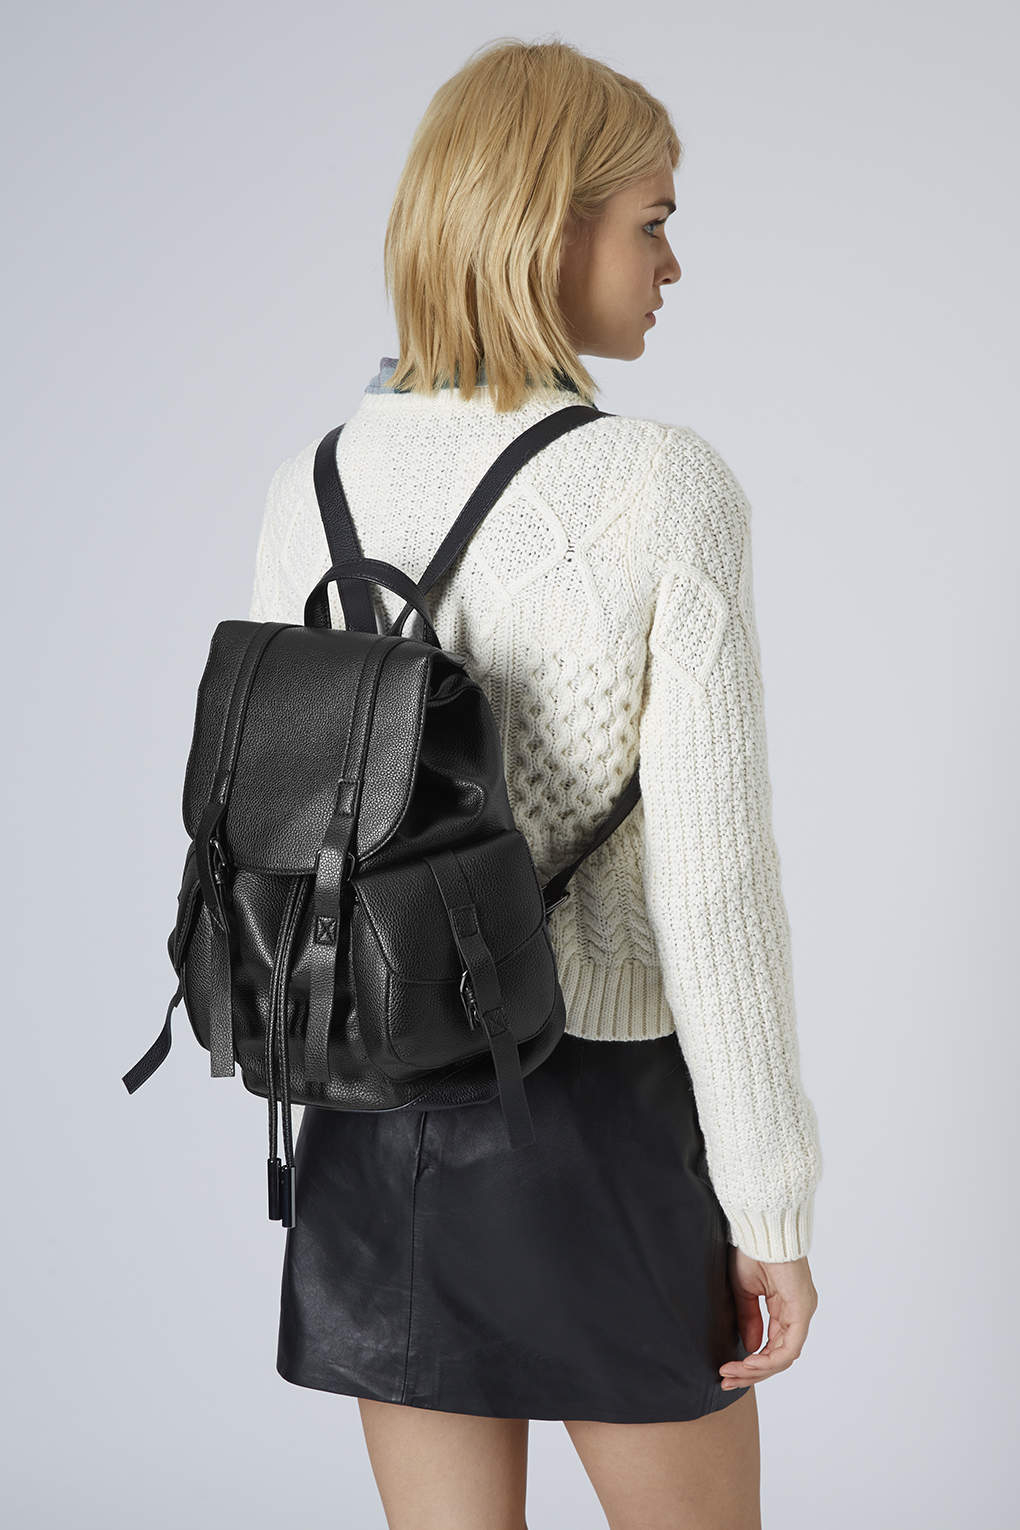 topshop black backpack a48c80